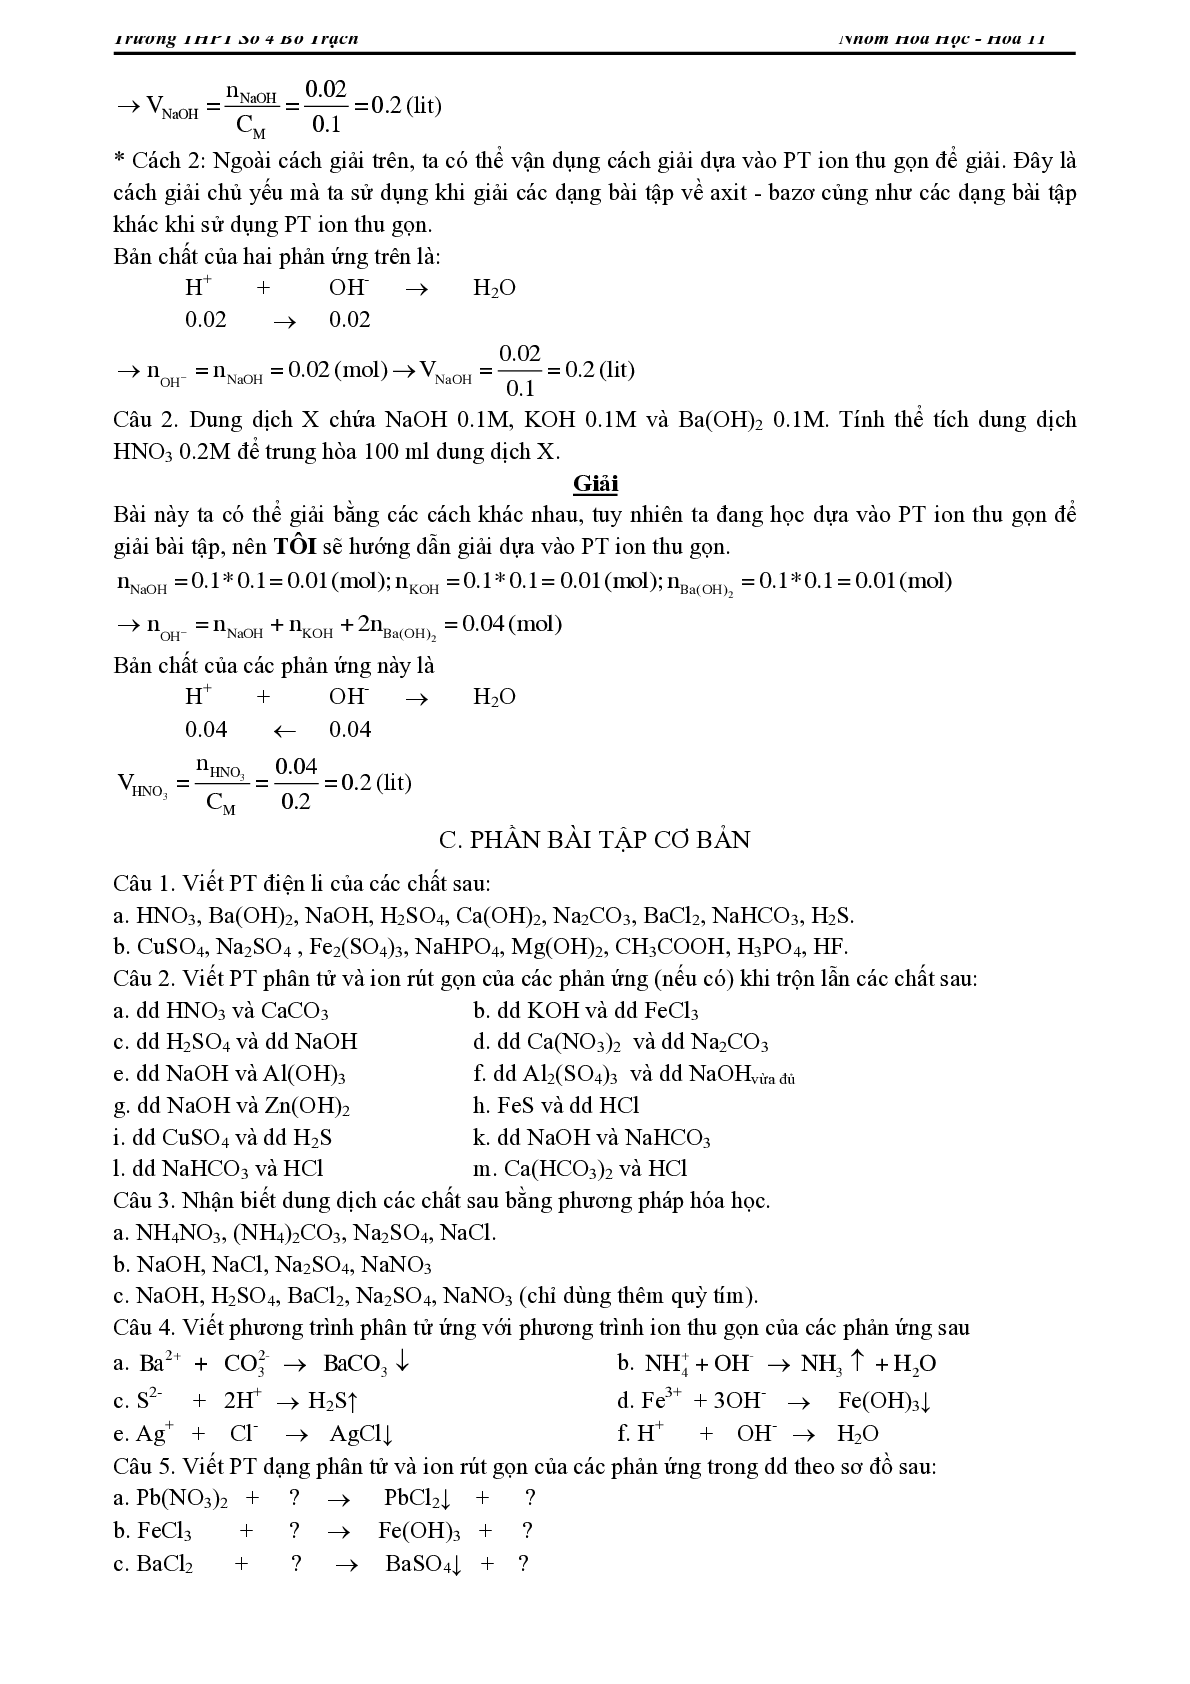 Lý thuyết, bài tập về Chương trình Hóa học lớp 11 có đáp án (trang 3)